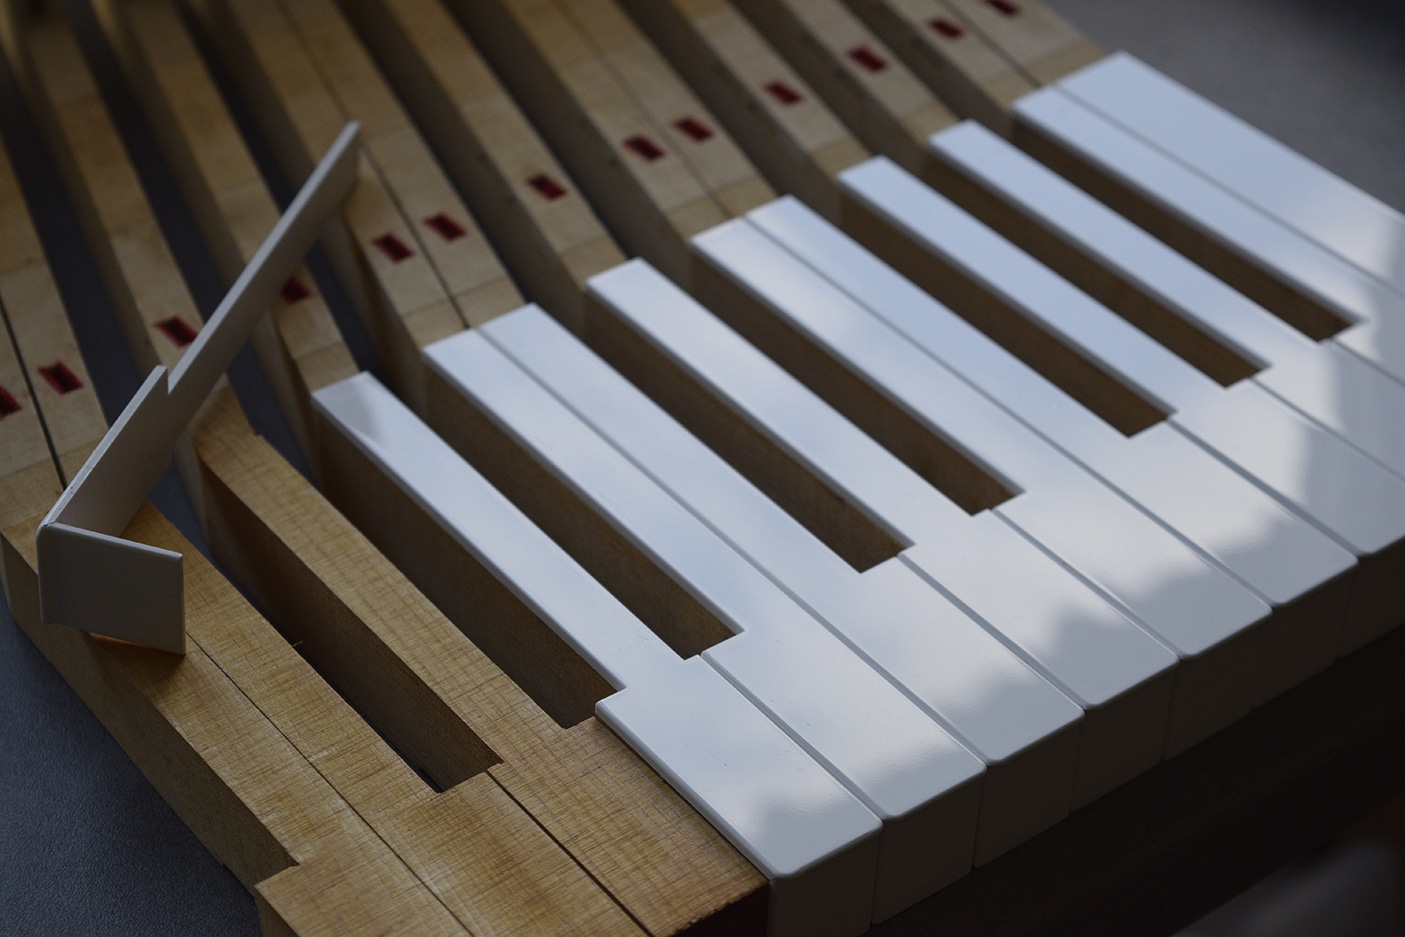 Recollage ou remplacement des revêtements de clavier de piano par des matériaux de substitution